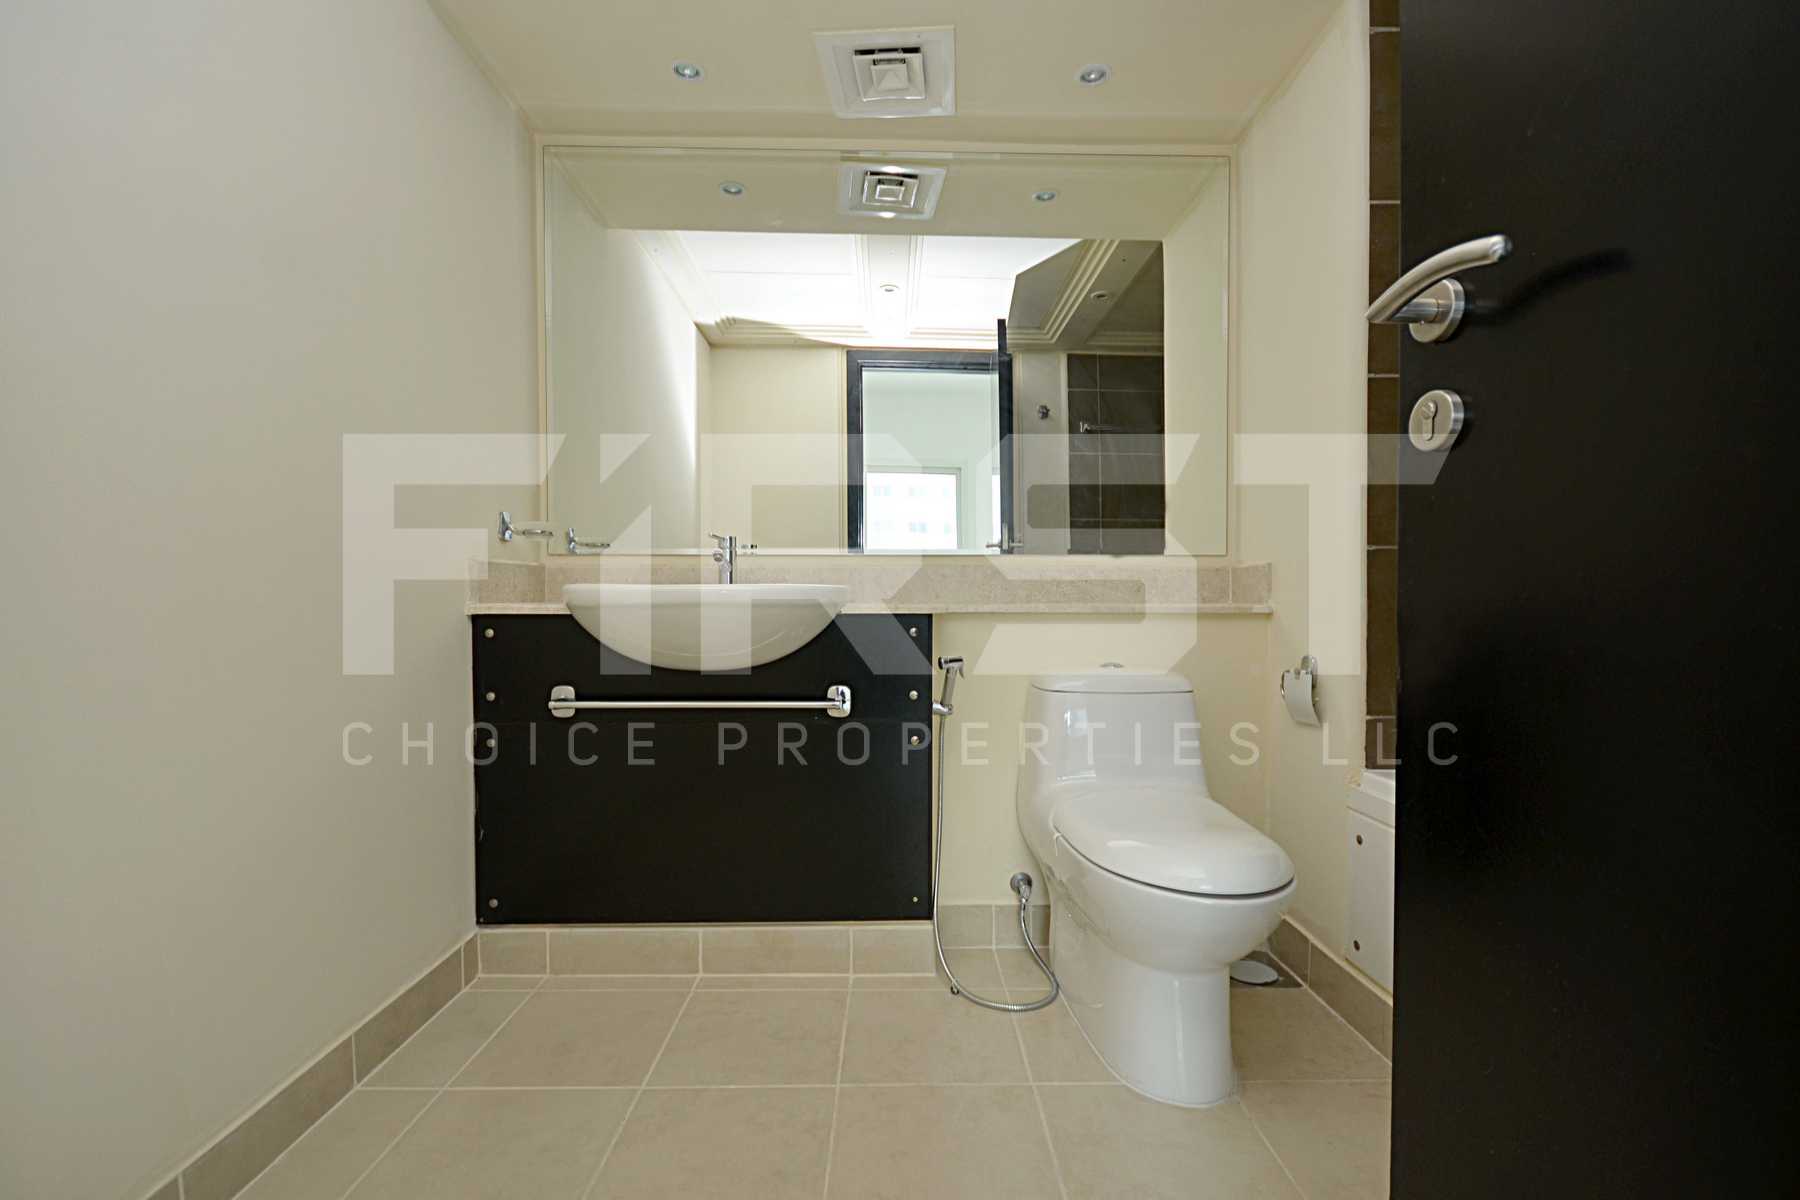 Internal Photo of 4 Bedroom Villa in Al Reef Villas Al Reef Abu Dhabi UAE  2858 sq (28).jpg